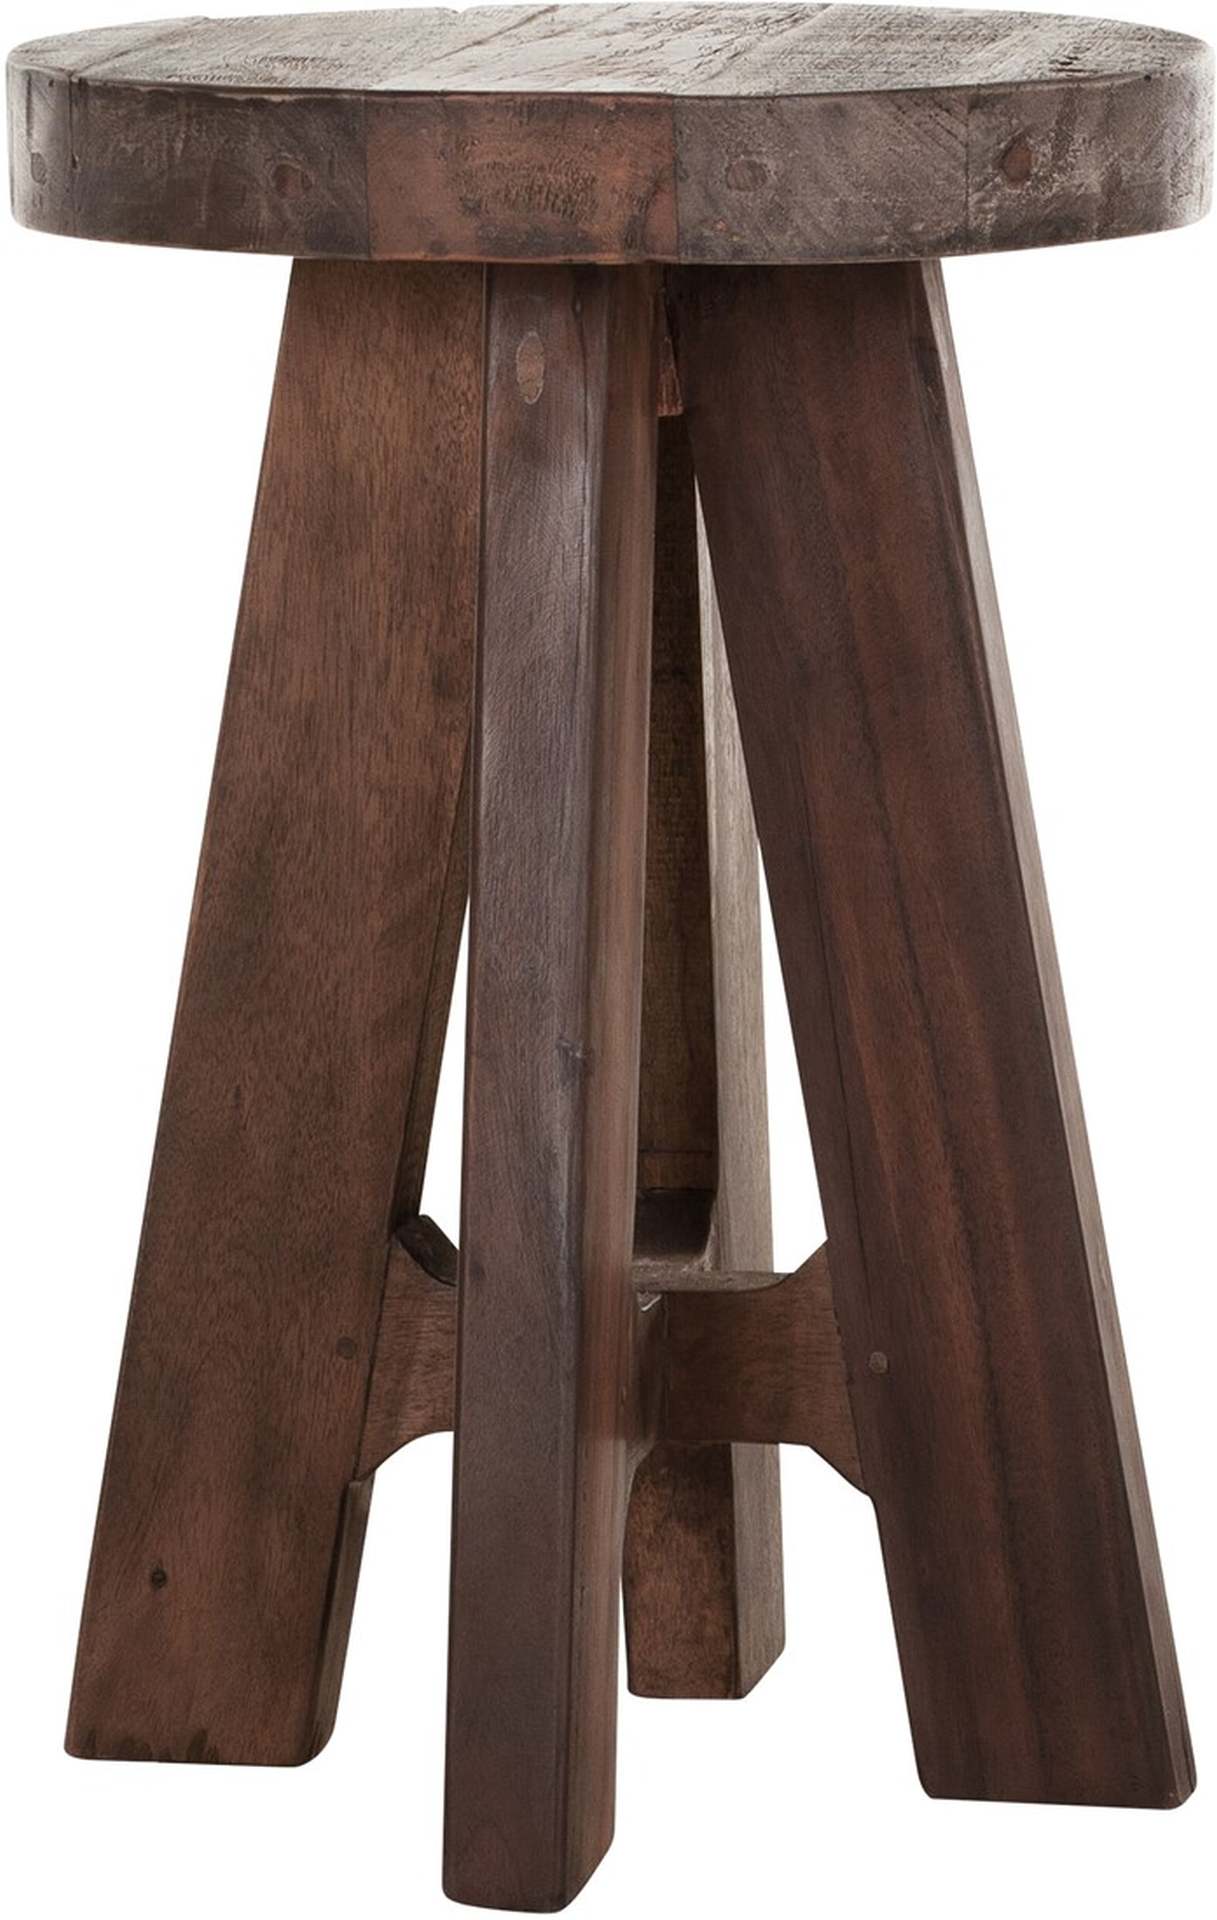 Der Hocker Timber wurde aus verschiedenen Holzarten gefertigt.Der Hocker überzeugt mit seinem massivem aber auch modernen Design.